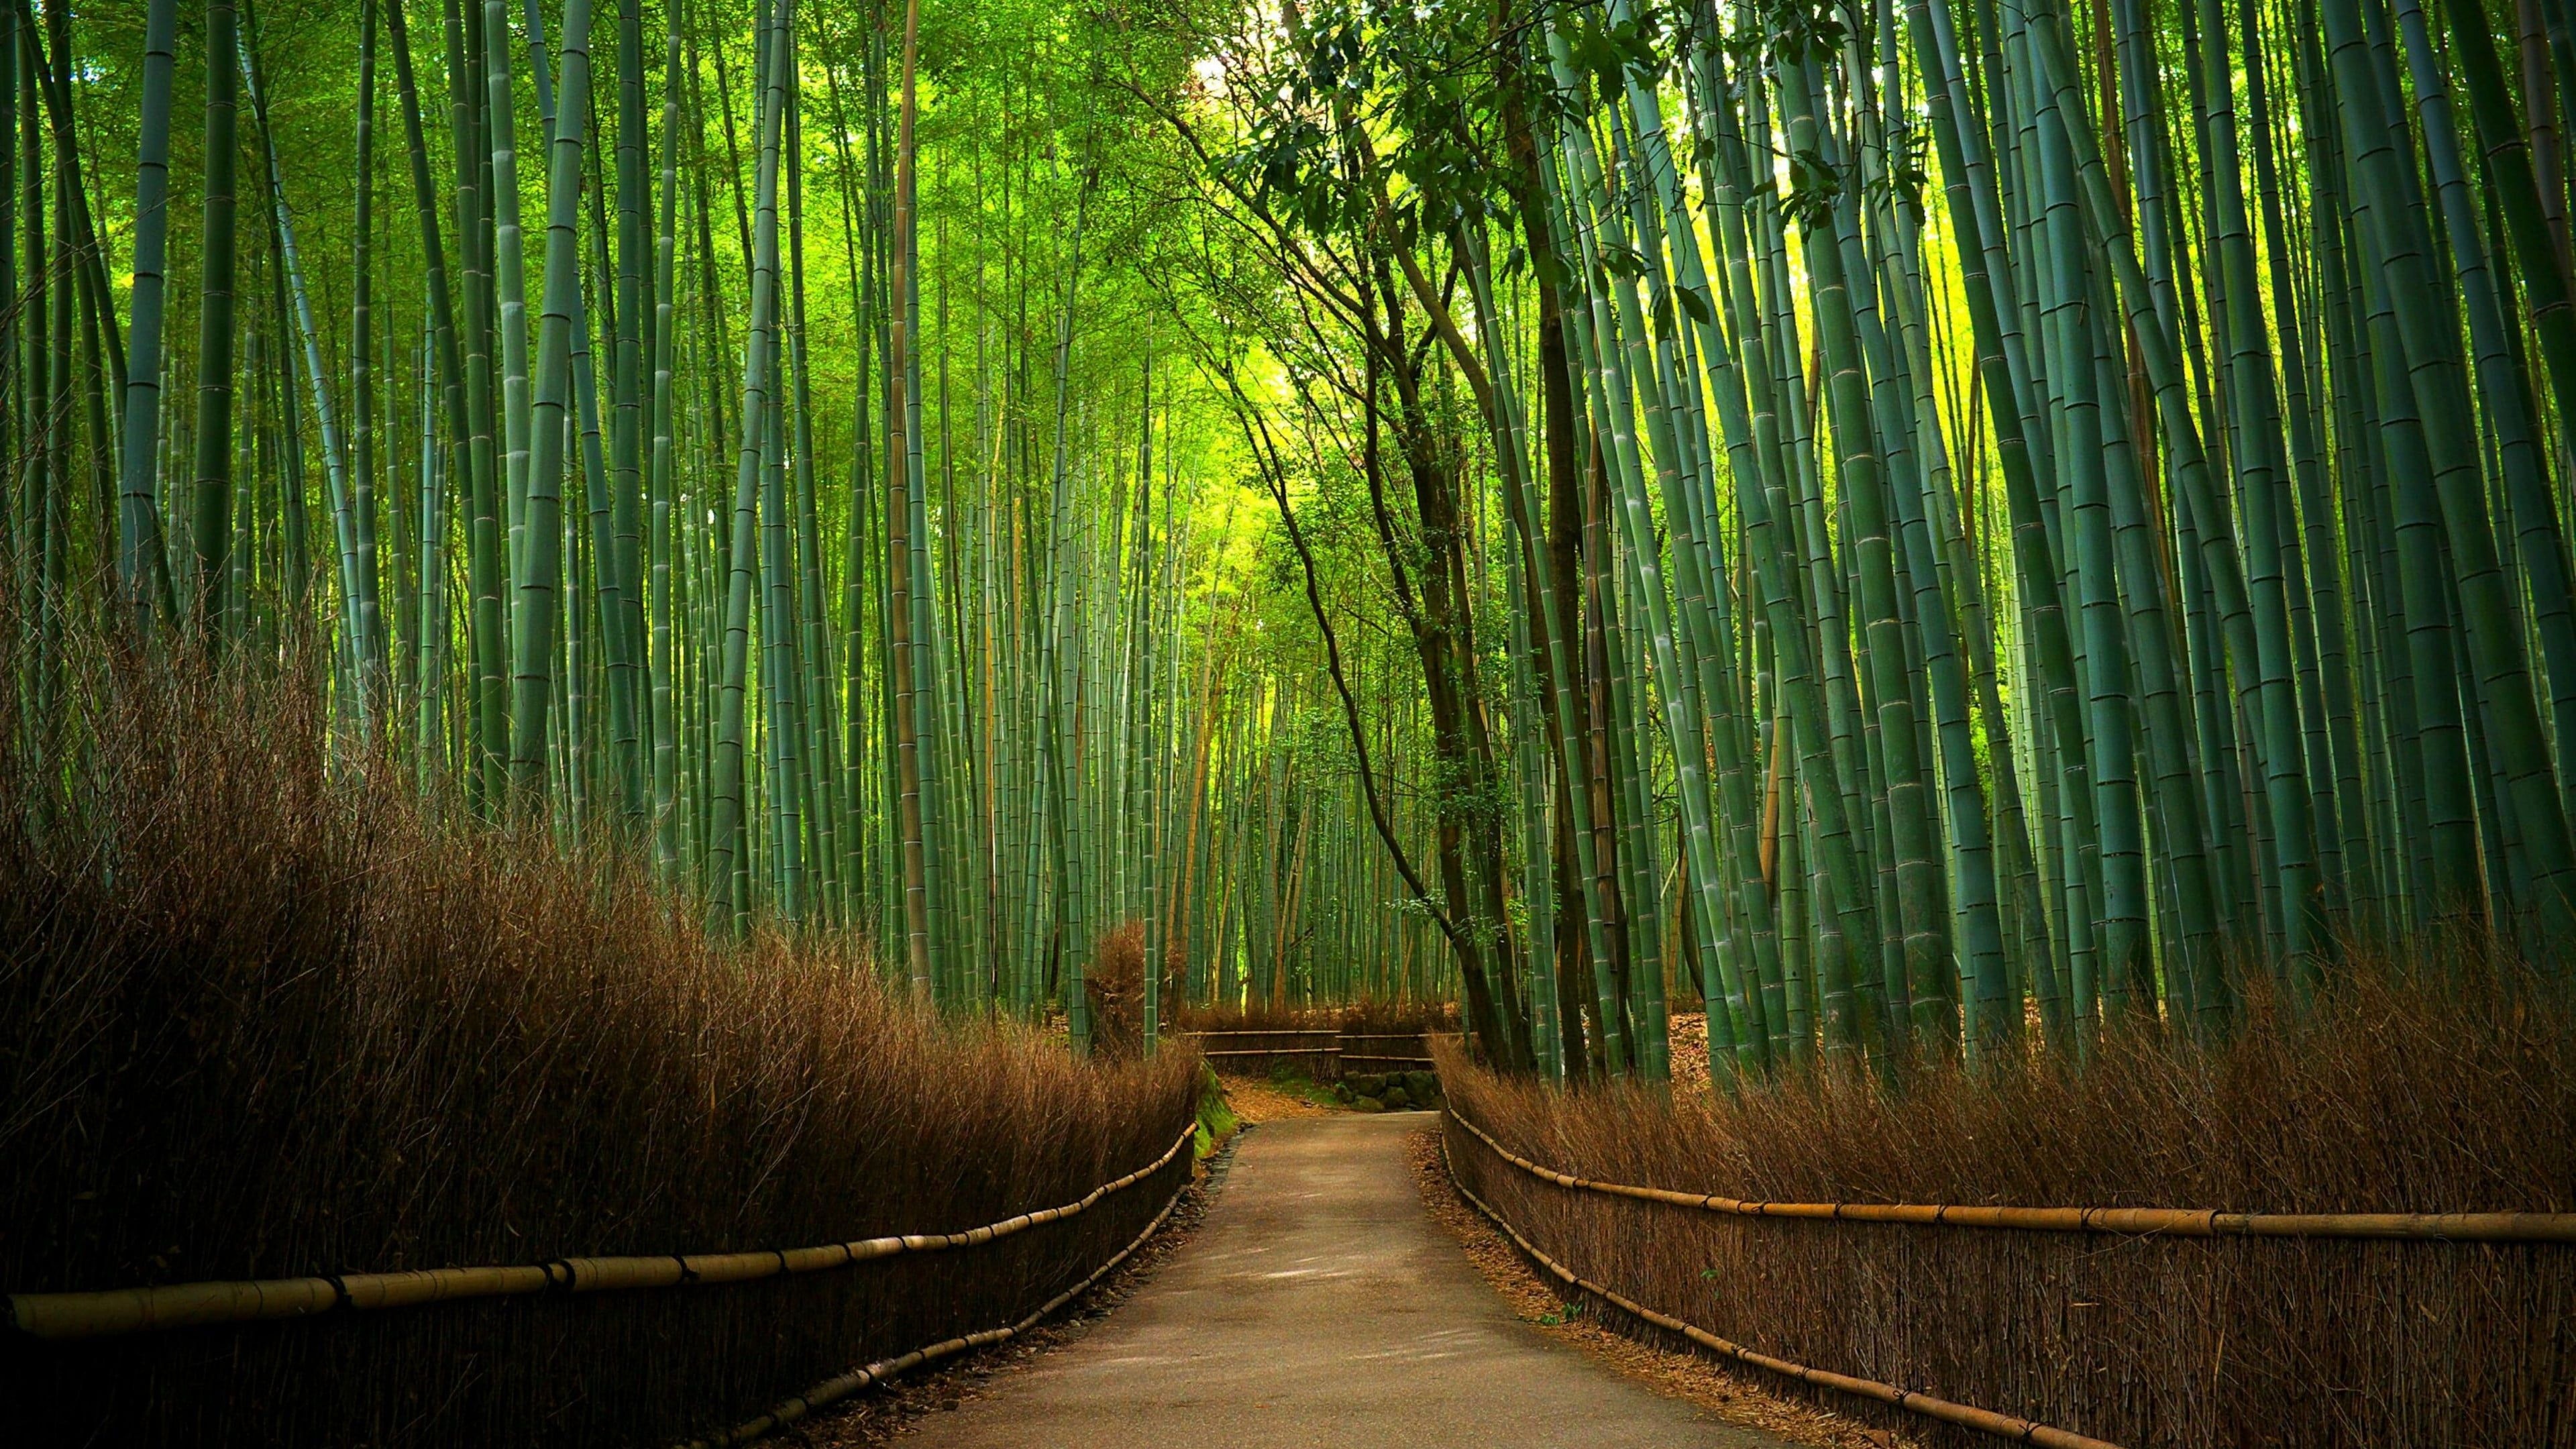 Bamboo forest, Green bamboo forest, Hutan bambu, Bamboo tree, 3840x2160 4K Desktop